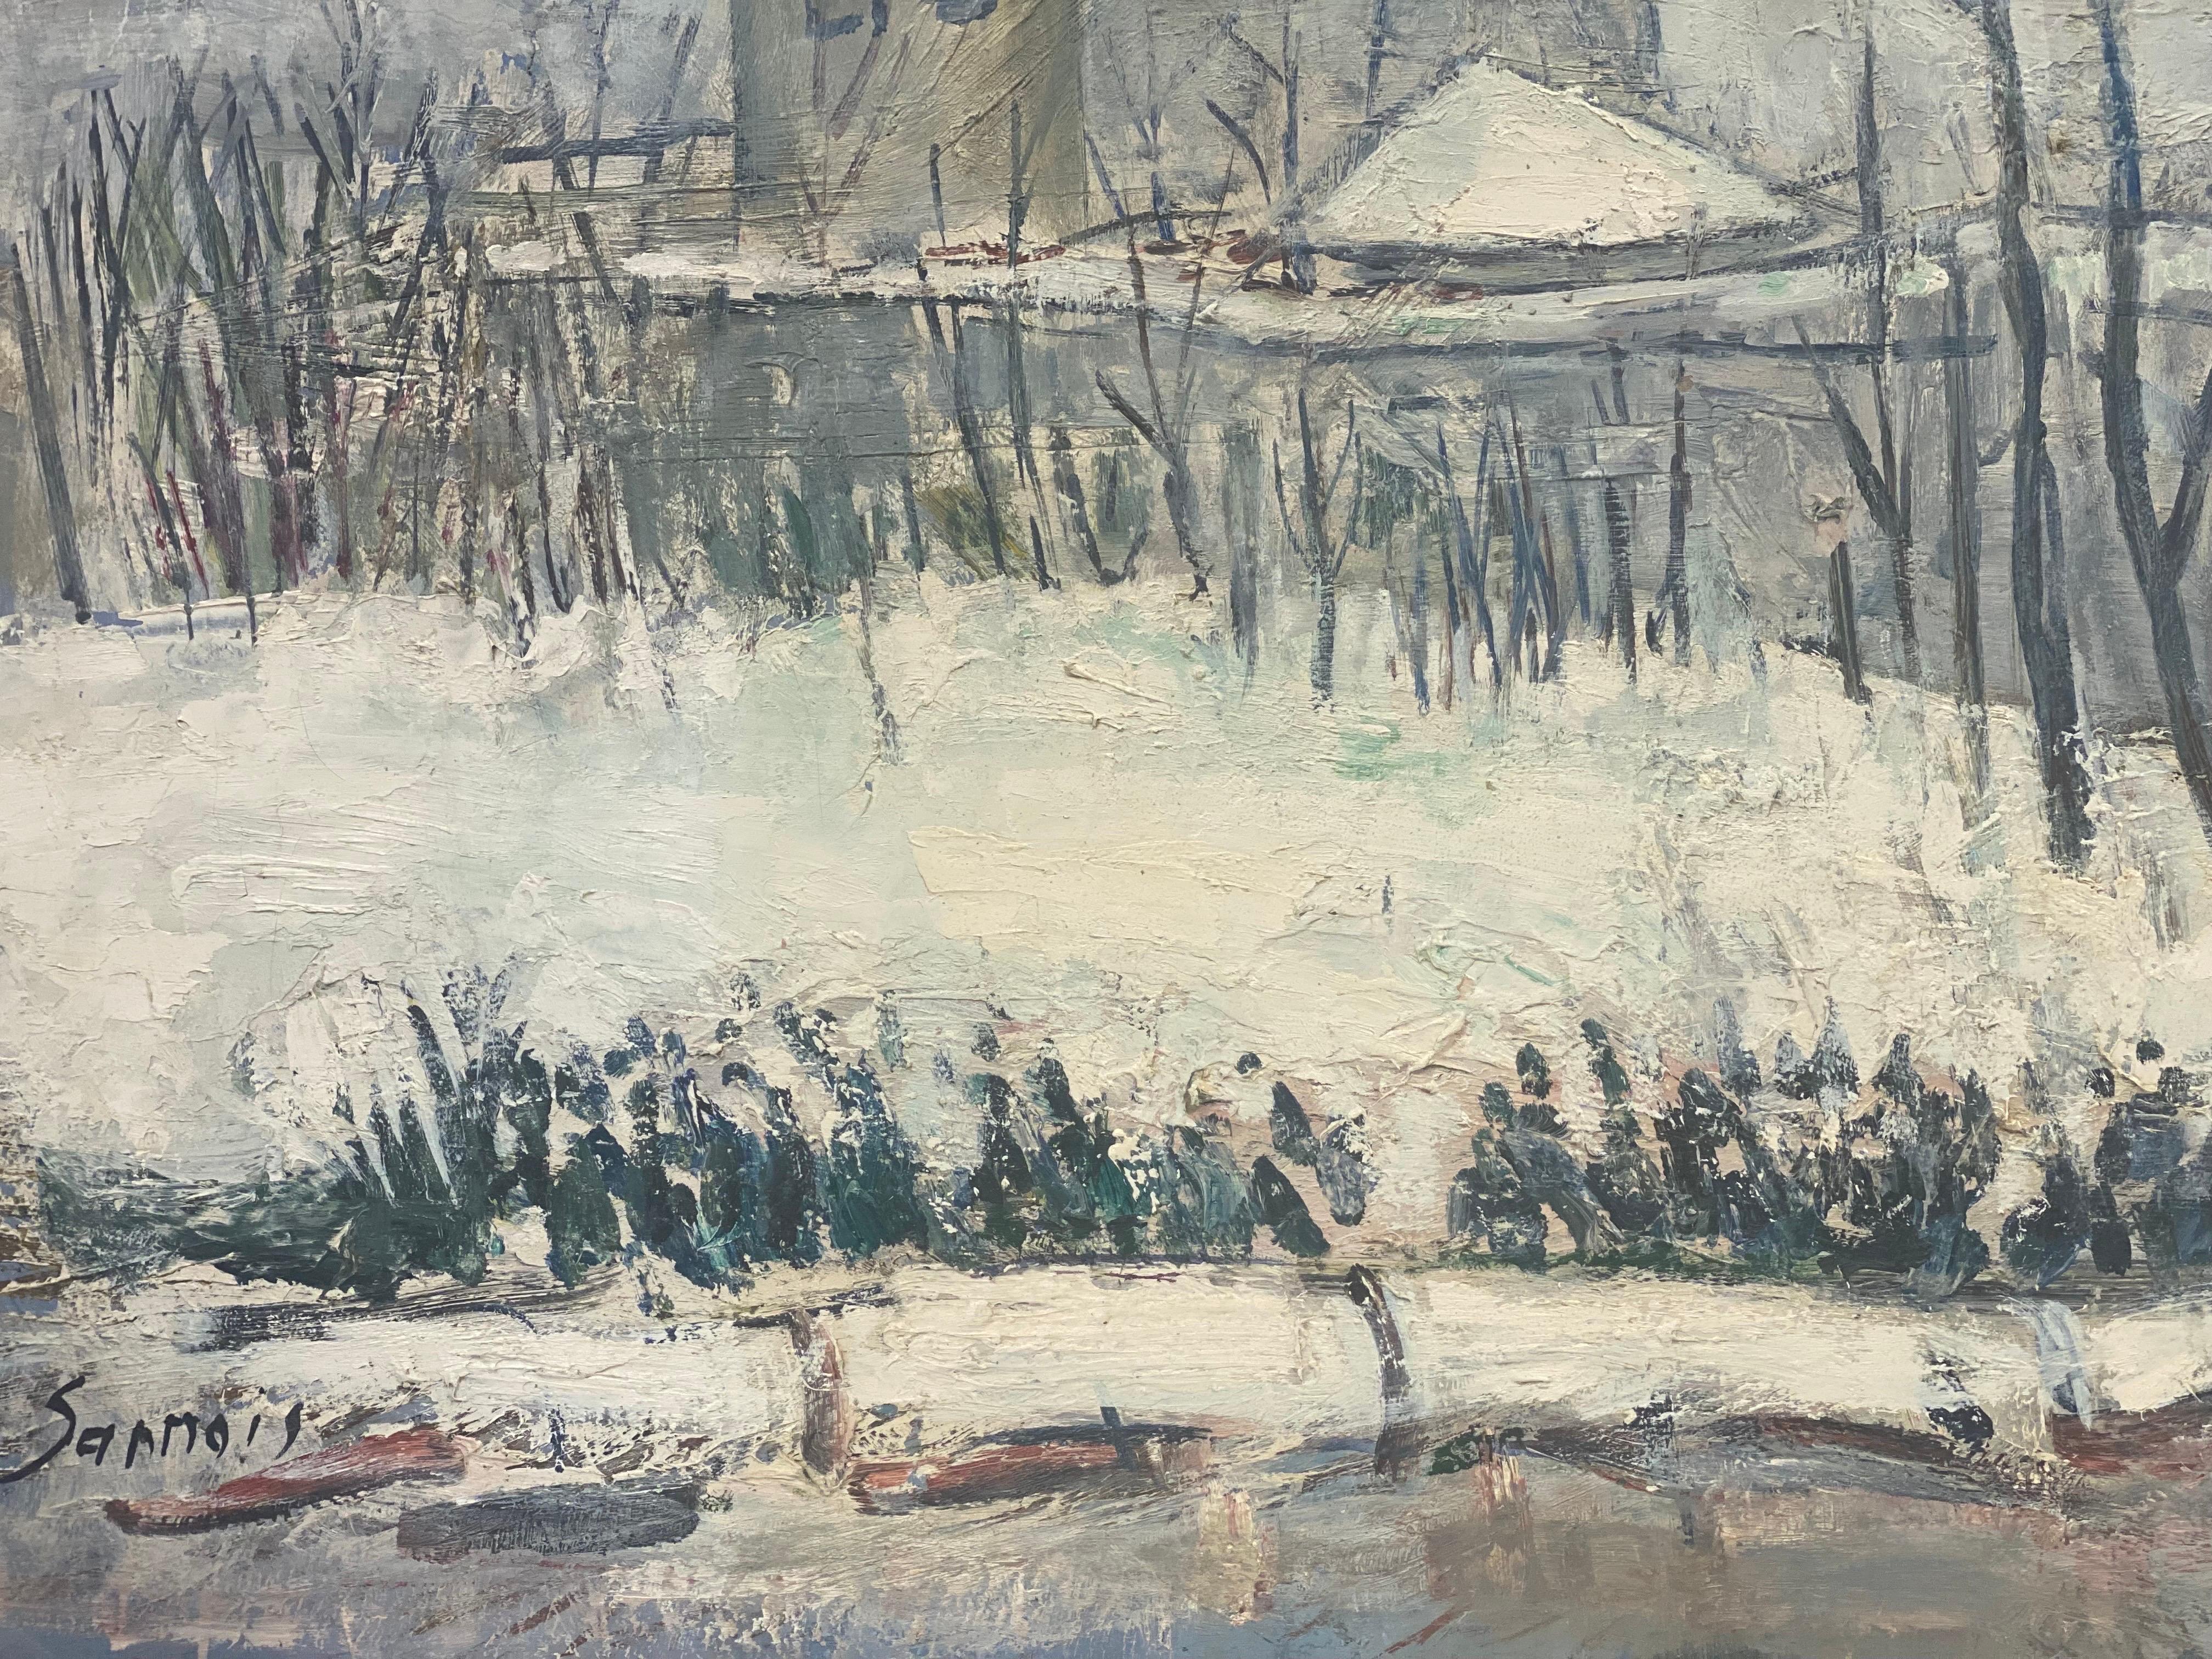 Sannois (banlieue de Paris) en hiver
par Édouard Righetti (1924-2001)

Signé en bas du recto et du verso, période des années 1960

peinture à l'huile sur toile, magnifiquement peinte avec de l'huile rick thick impasto représentant cette vue